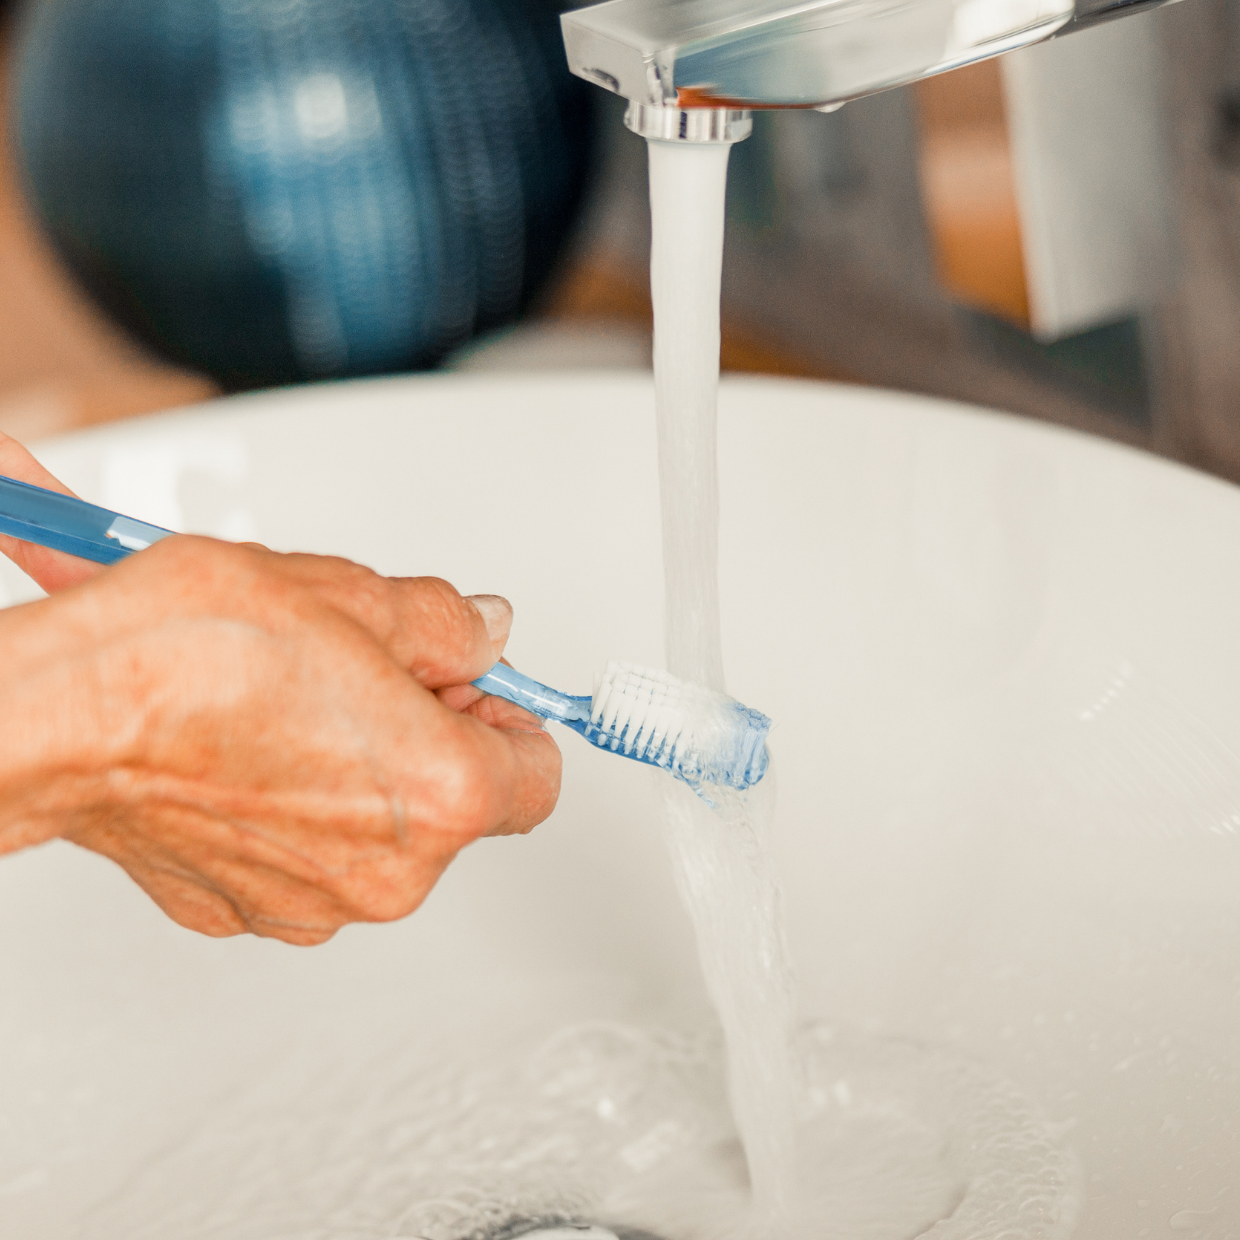  雑菌だらけの歯ブラシで磨いてるかも…。“正しい歯ブラシの洗い方” 